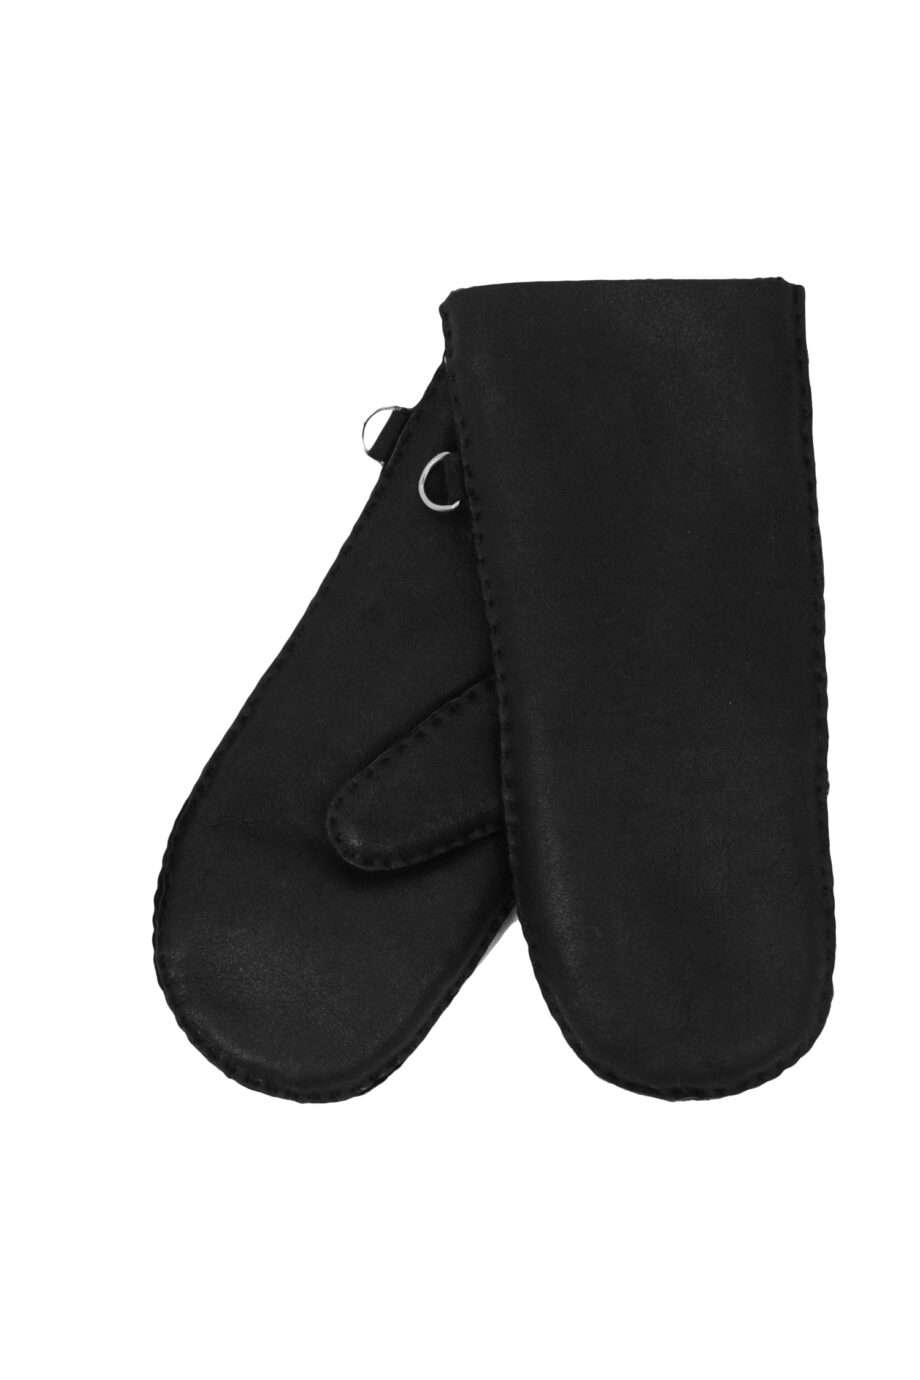 urban black nappa sheepfur mittens (men) large